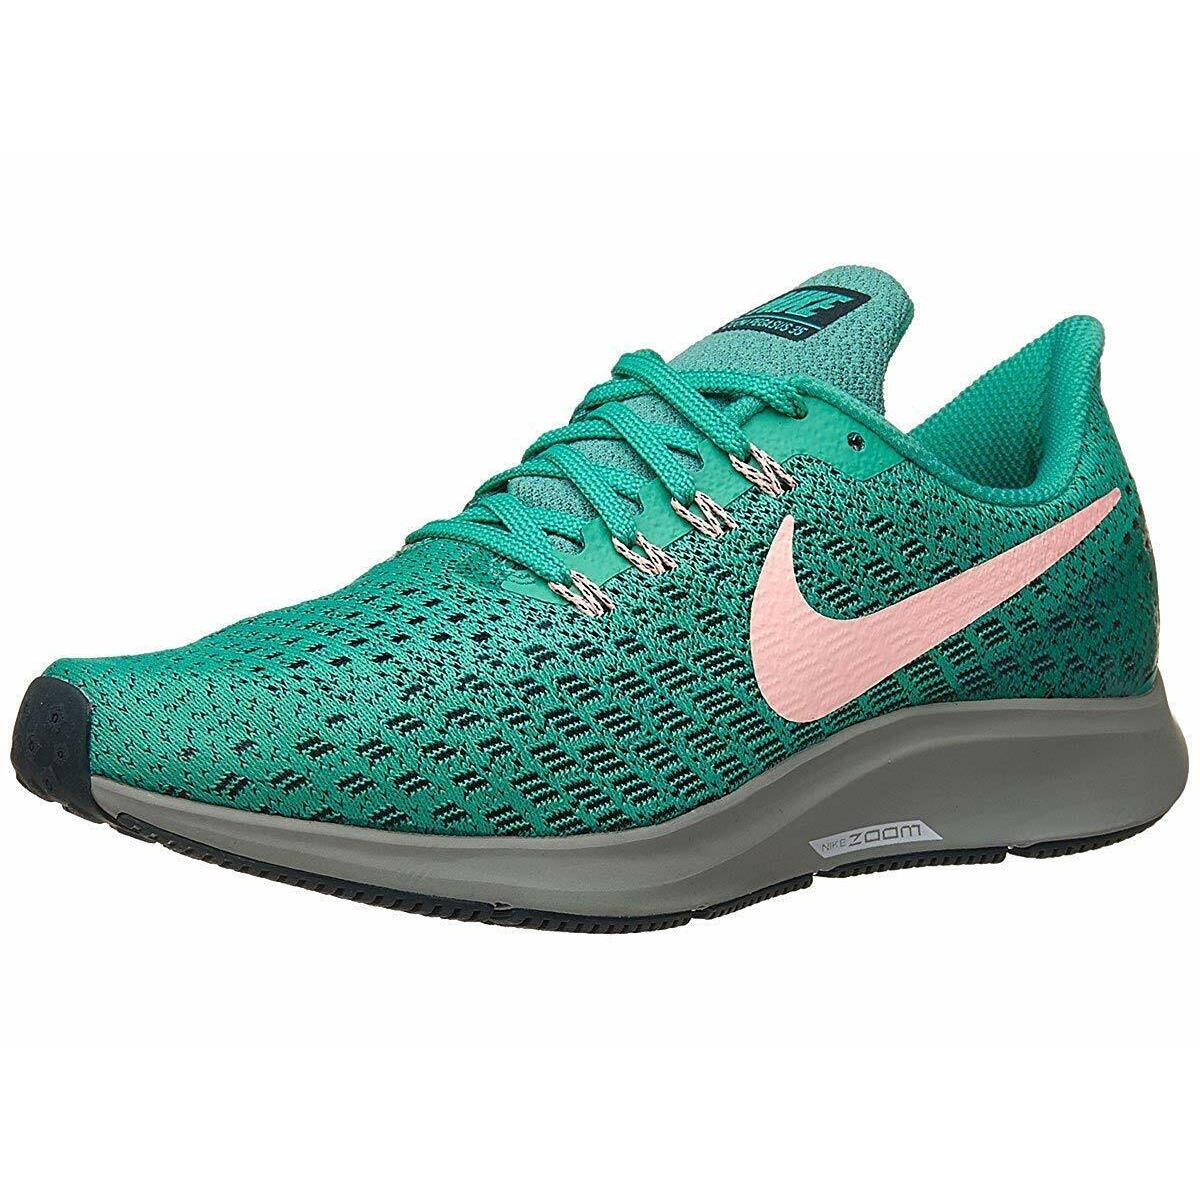 Nike Air Zoom Pegasus 35 Green Pink Running Shoes Women s Size 6